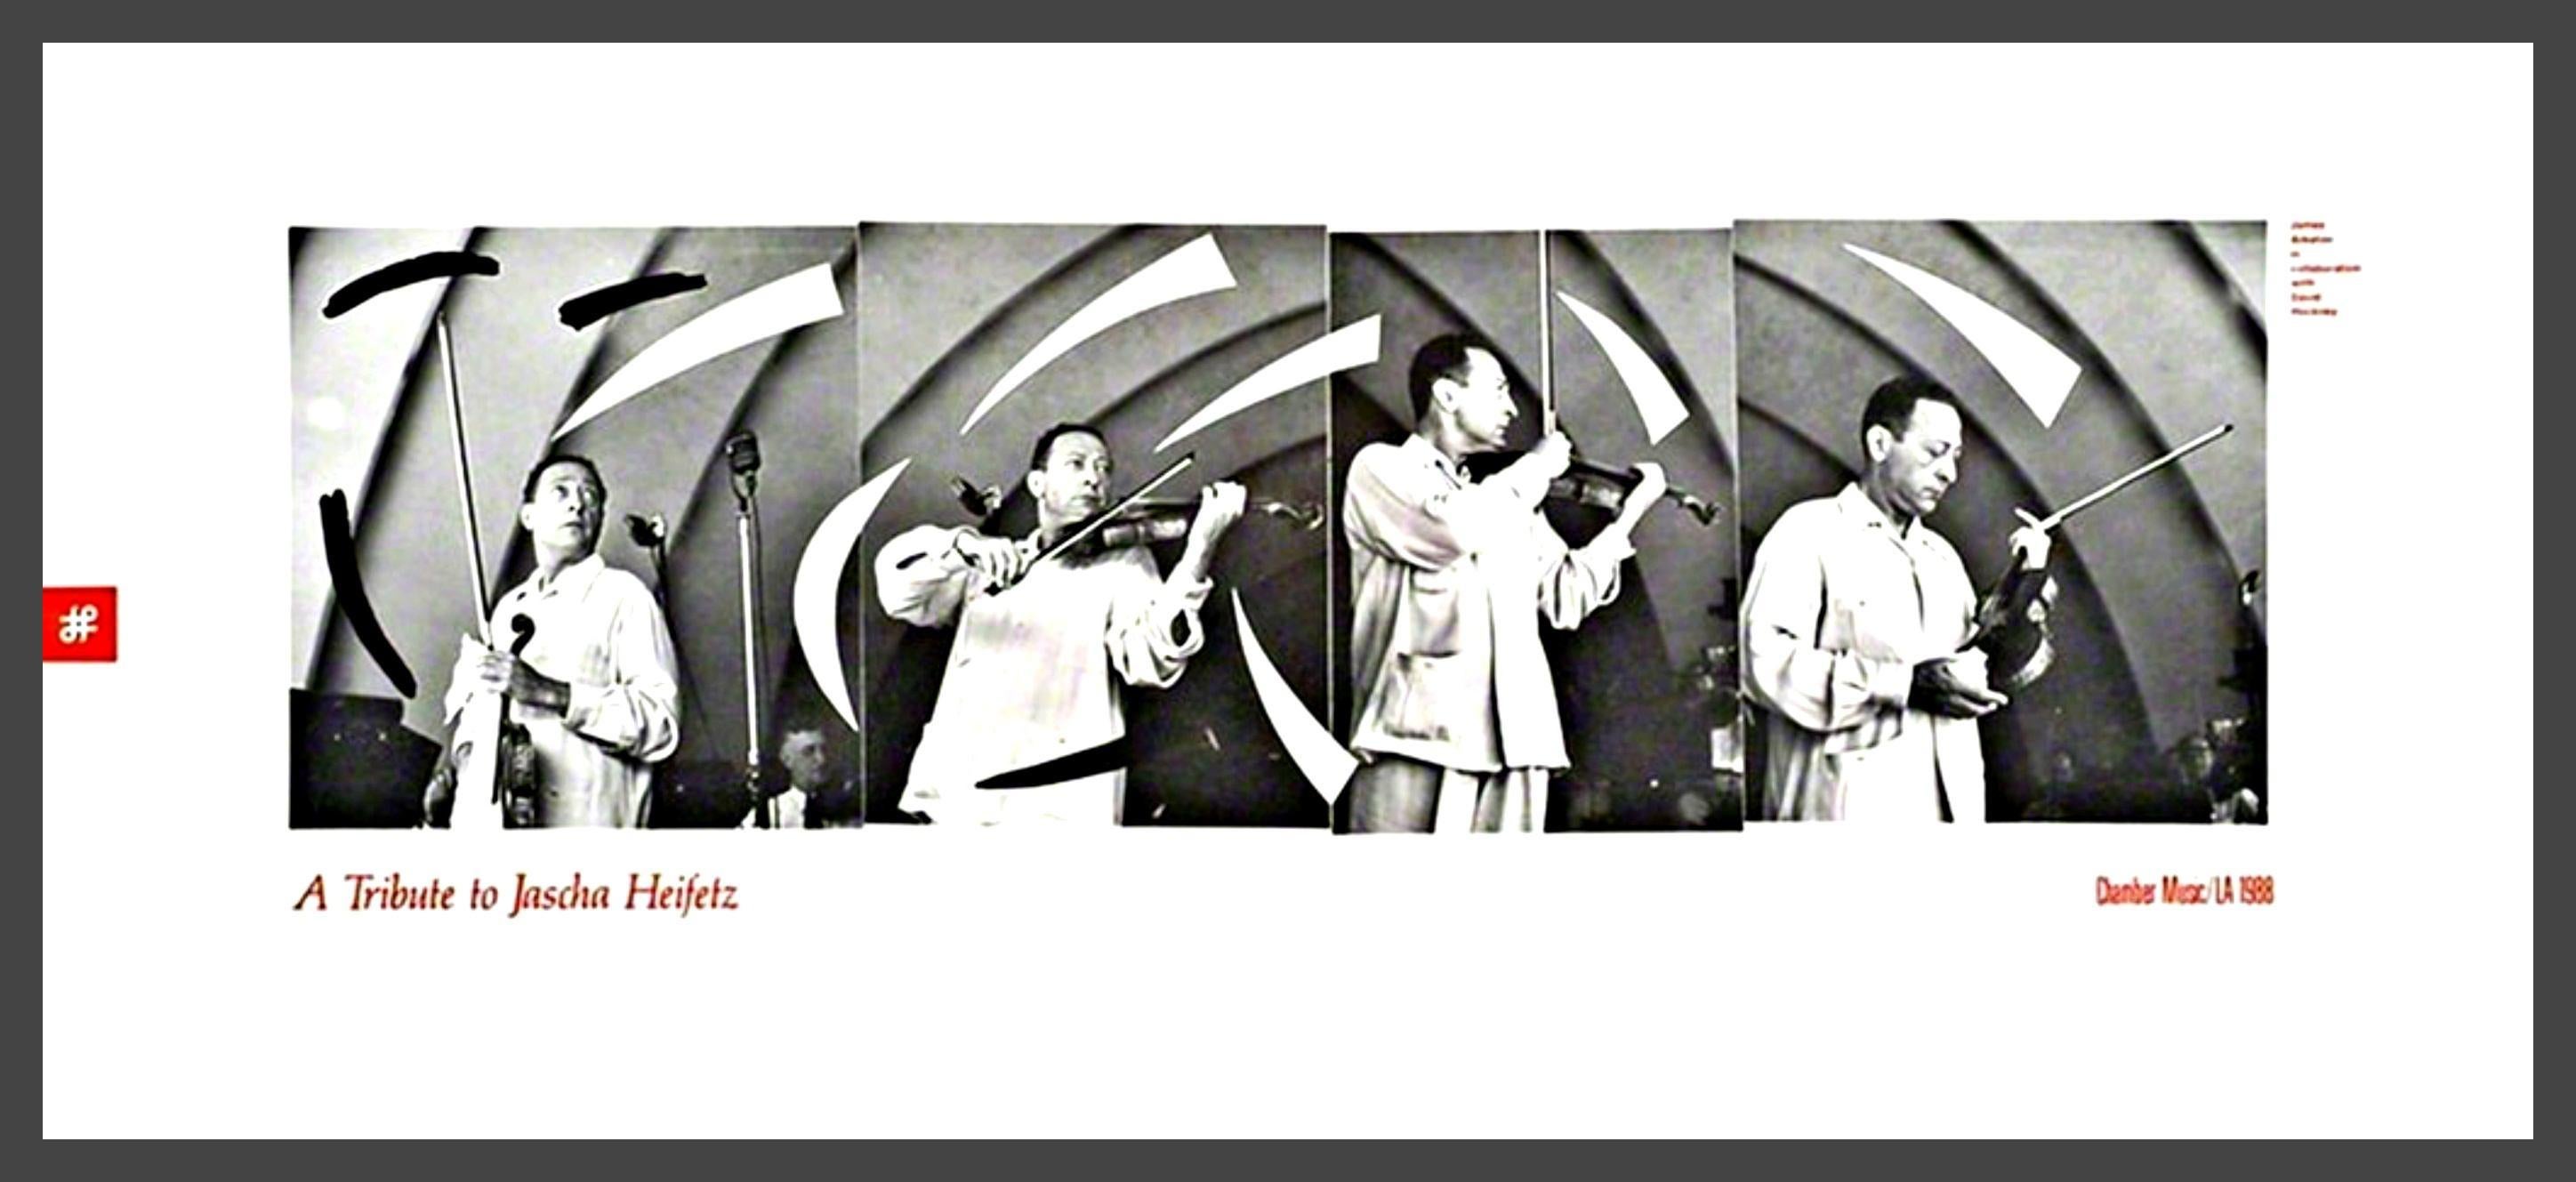 David Hockney
Hommage au violoniste Jascha Heifetz, 1988
Affiche de lithographie offset
15 × 34 pouces
Édition limitée à 100 exemplaires
Sans cadre (non signé)
Un autre exemple de cette œuvre a été présenté dans la célèbre exposition "Songs Without